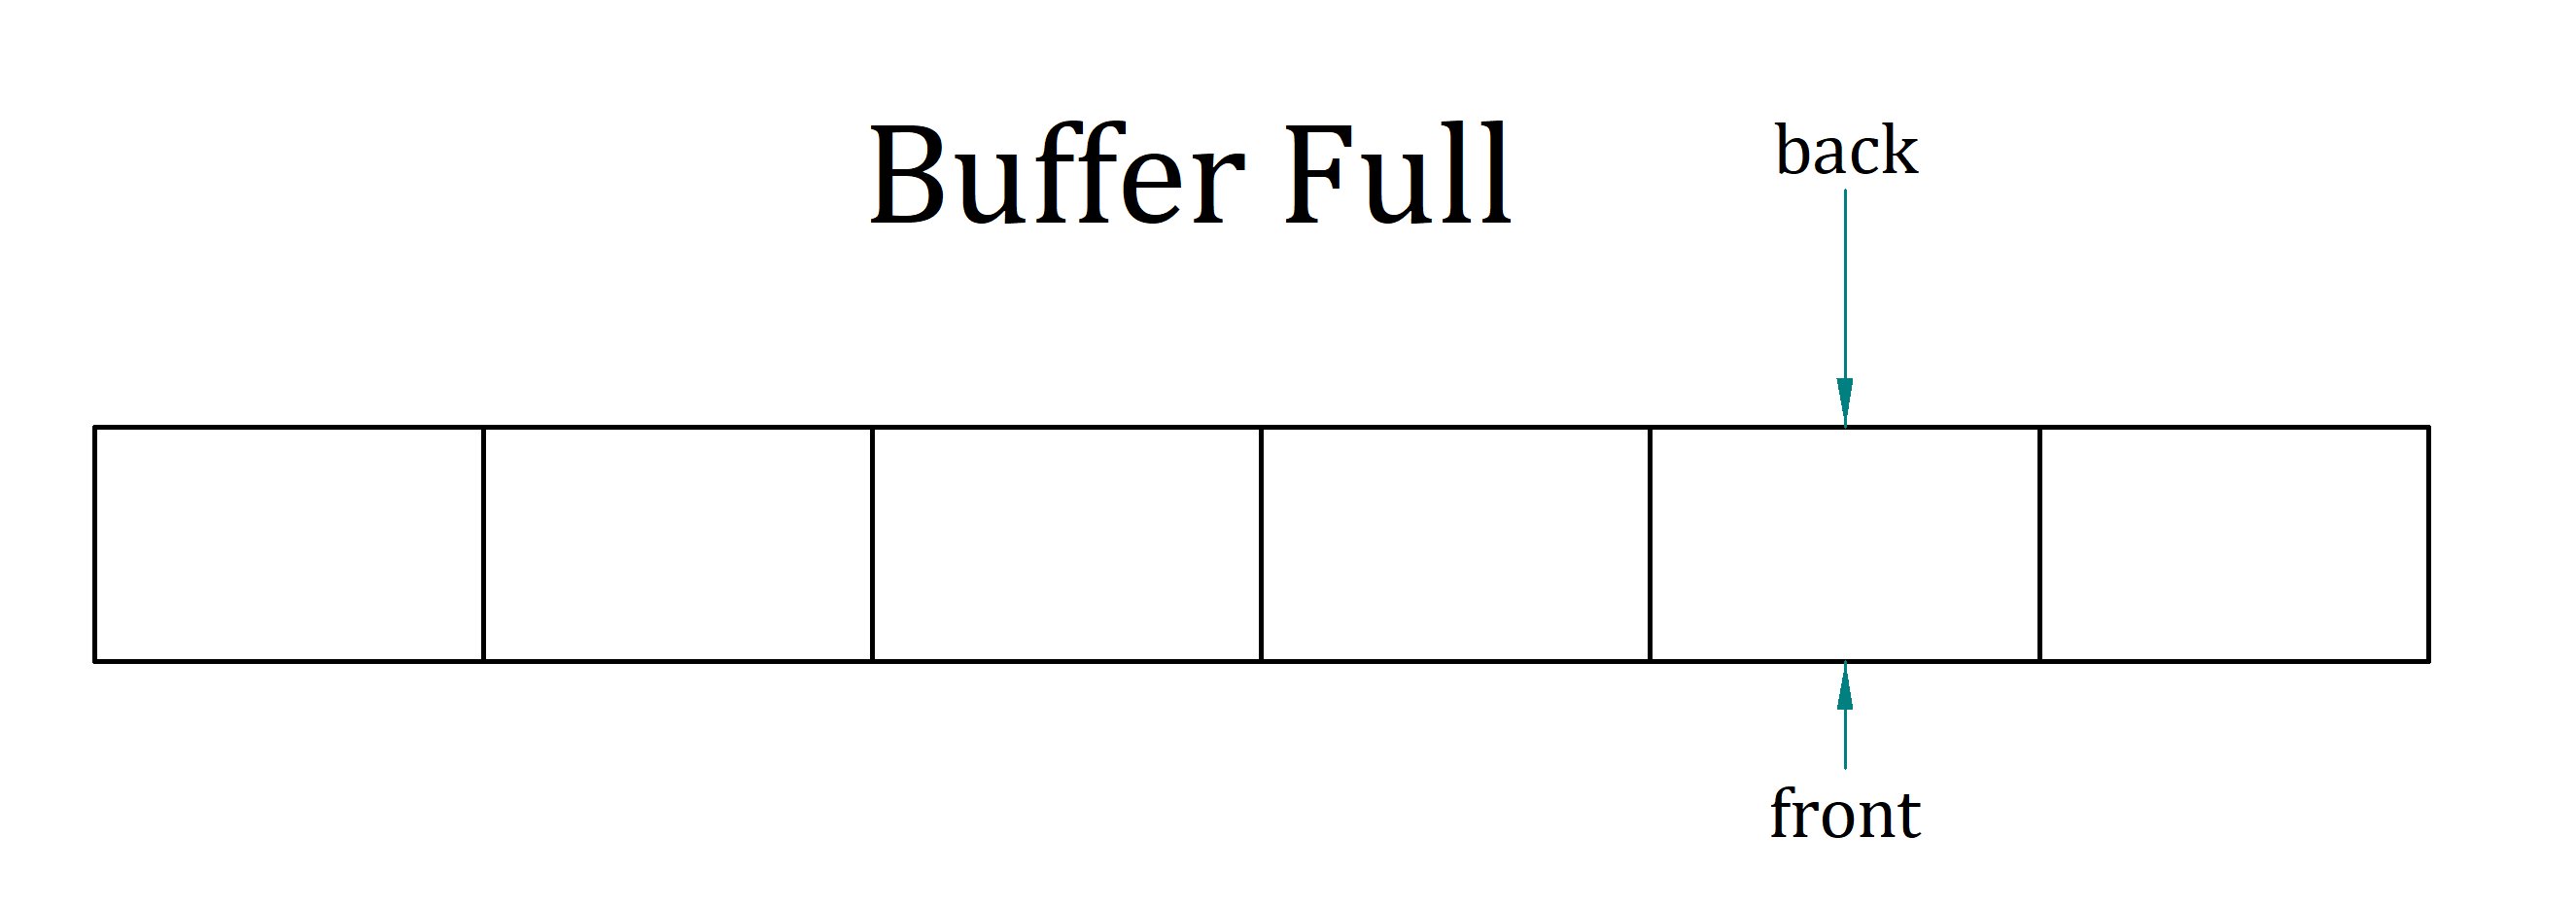 Buffer Full